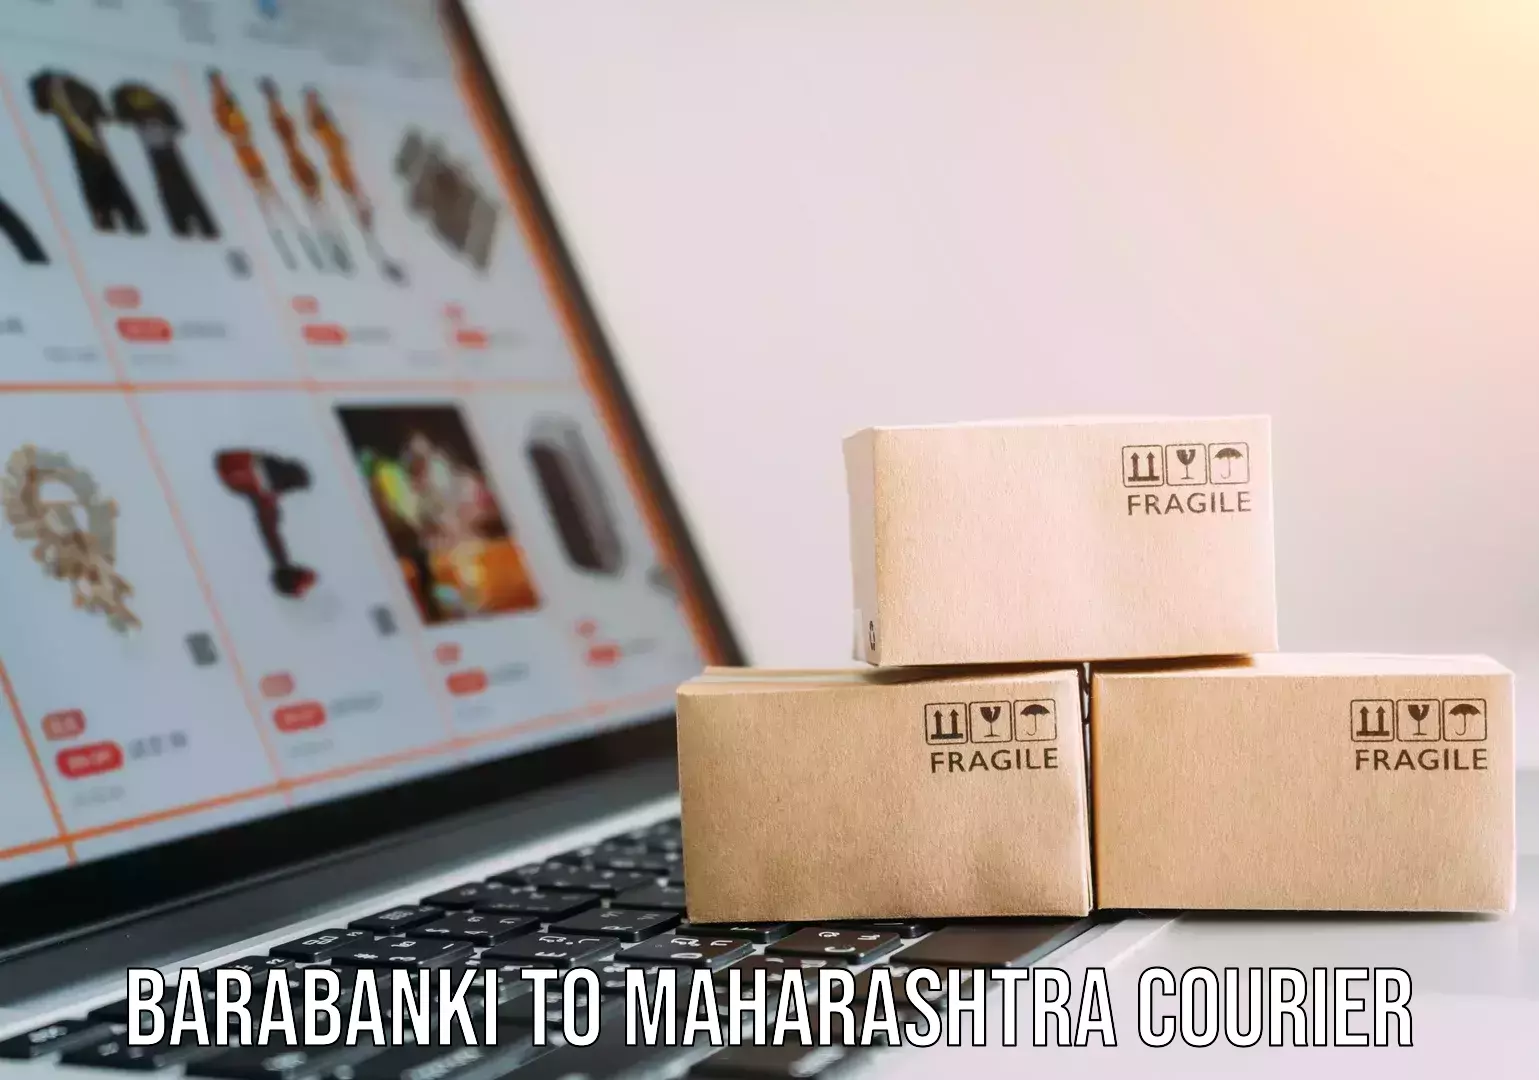 Next-day delivery options Barabanki to Maharashtra